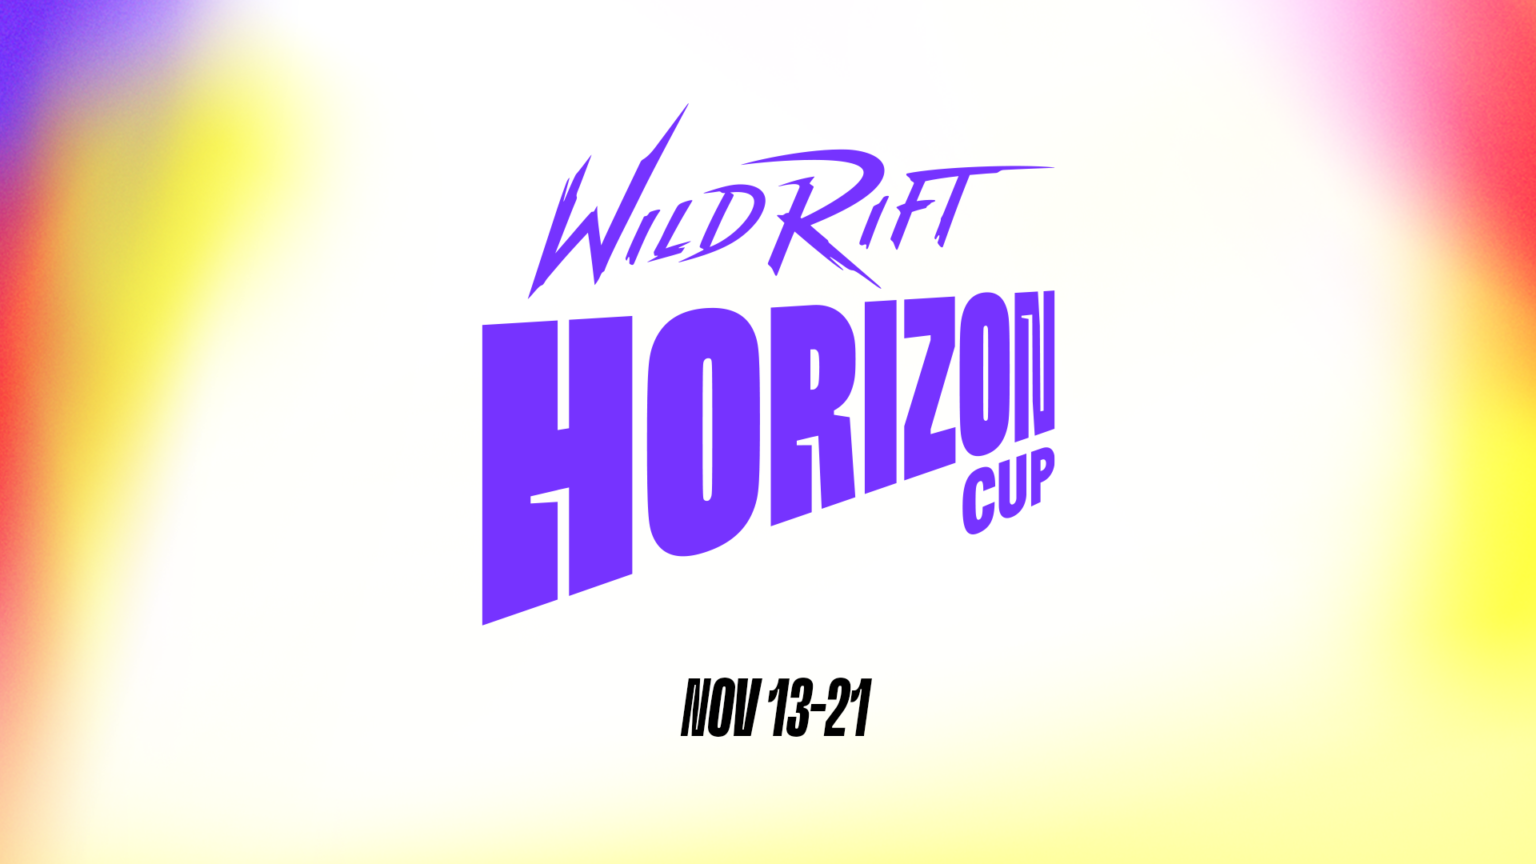 Quam spectare Foedus Fabularum: Wild Rift Horizon Cup!